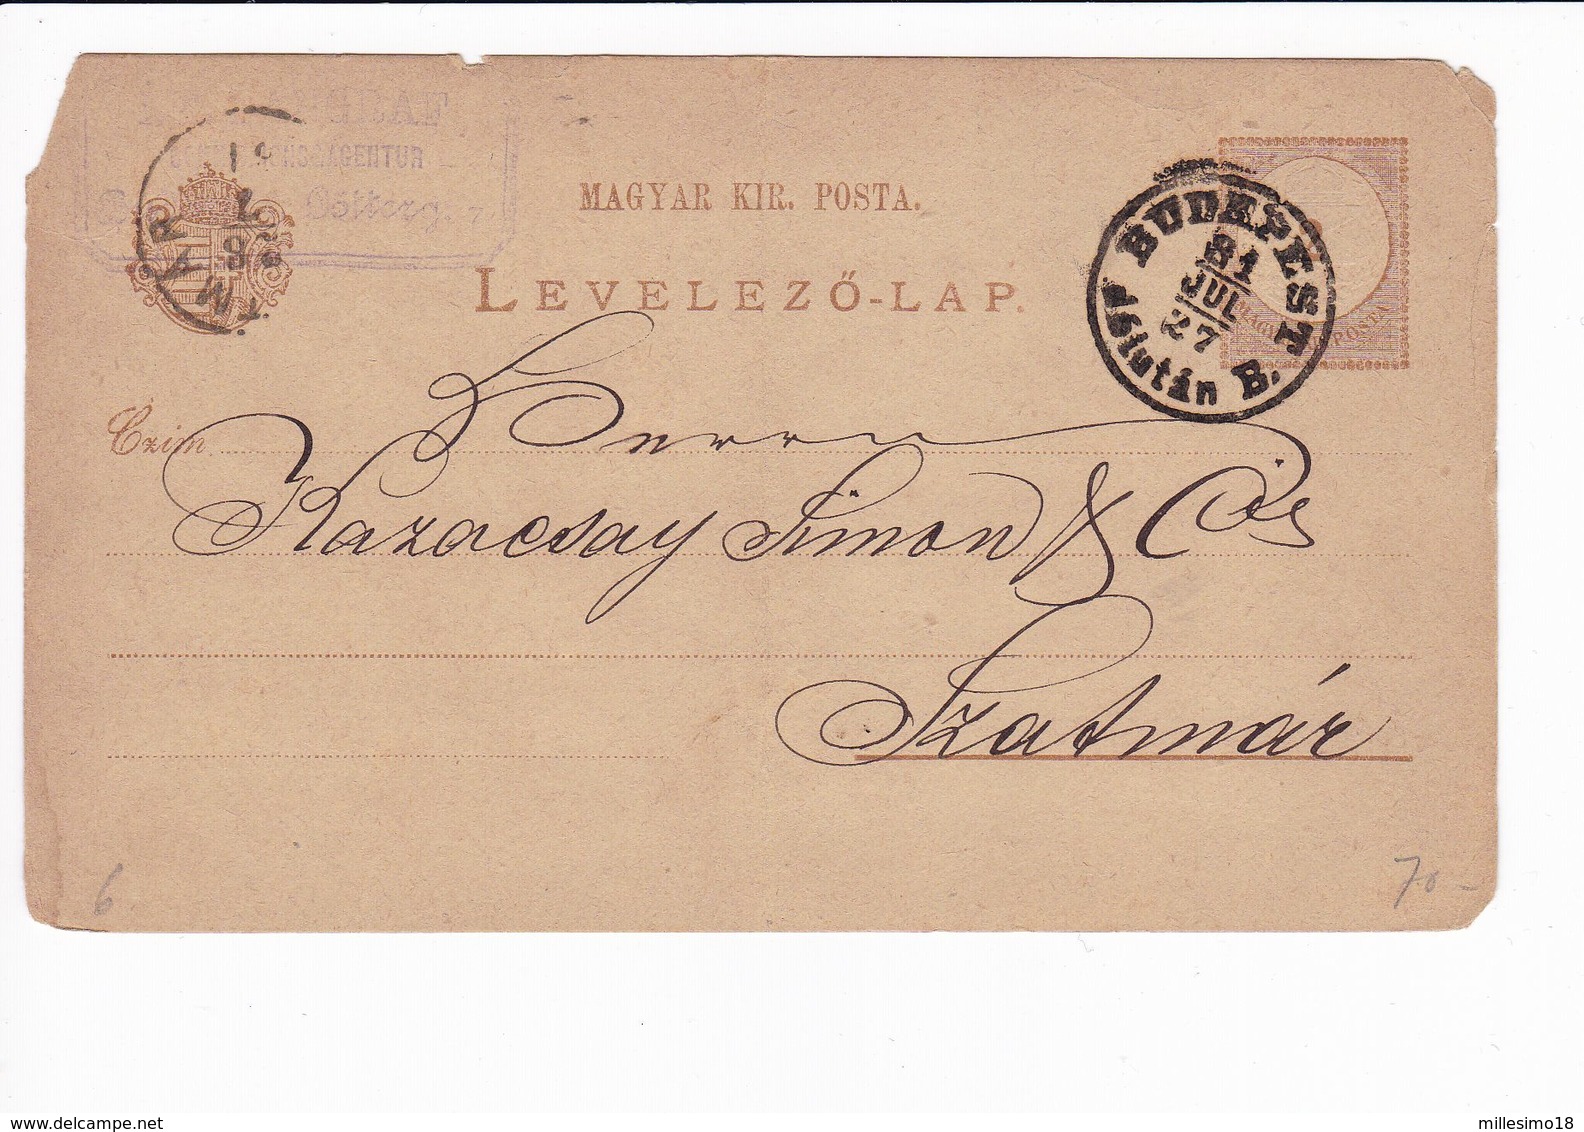 Ungheria Hungary Postal Stationery 1927 Levelezo Lap. Budapest - Enteros Postales